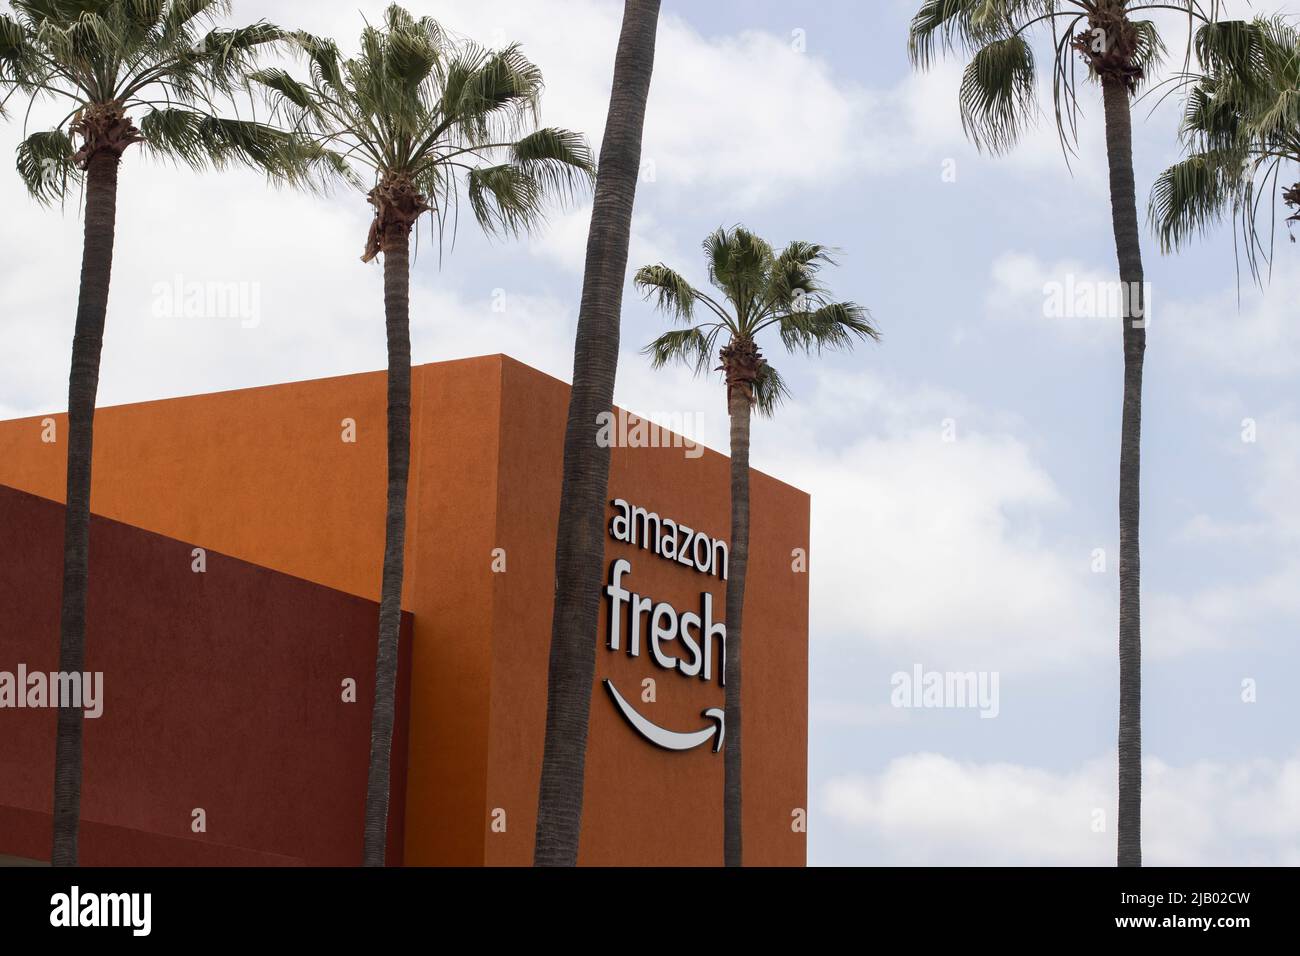 Le logo Amazon Fresh est visible dans un magasin d'alimentation Amazon Fresh à Irvine, Californie, le dimanche, 8 mai 2022. Amazon Fresh est une filiale de Amazon.com. Banque D'Images